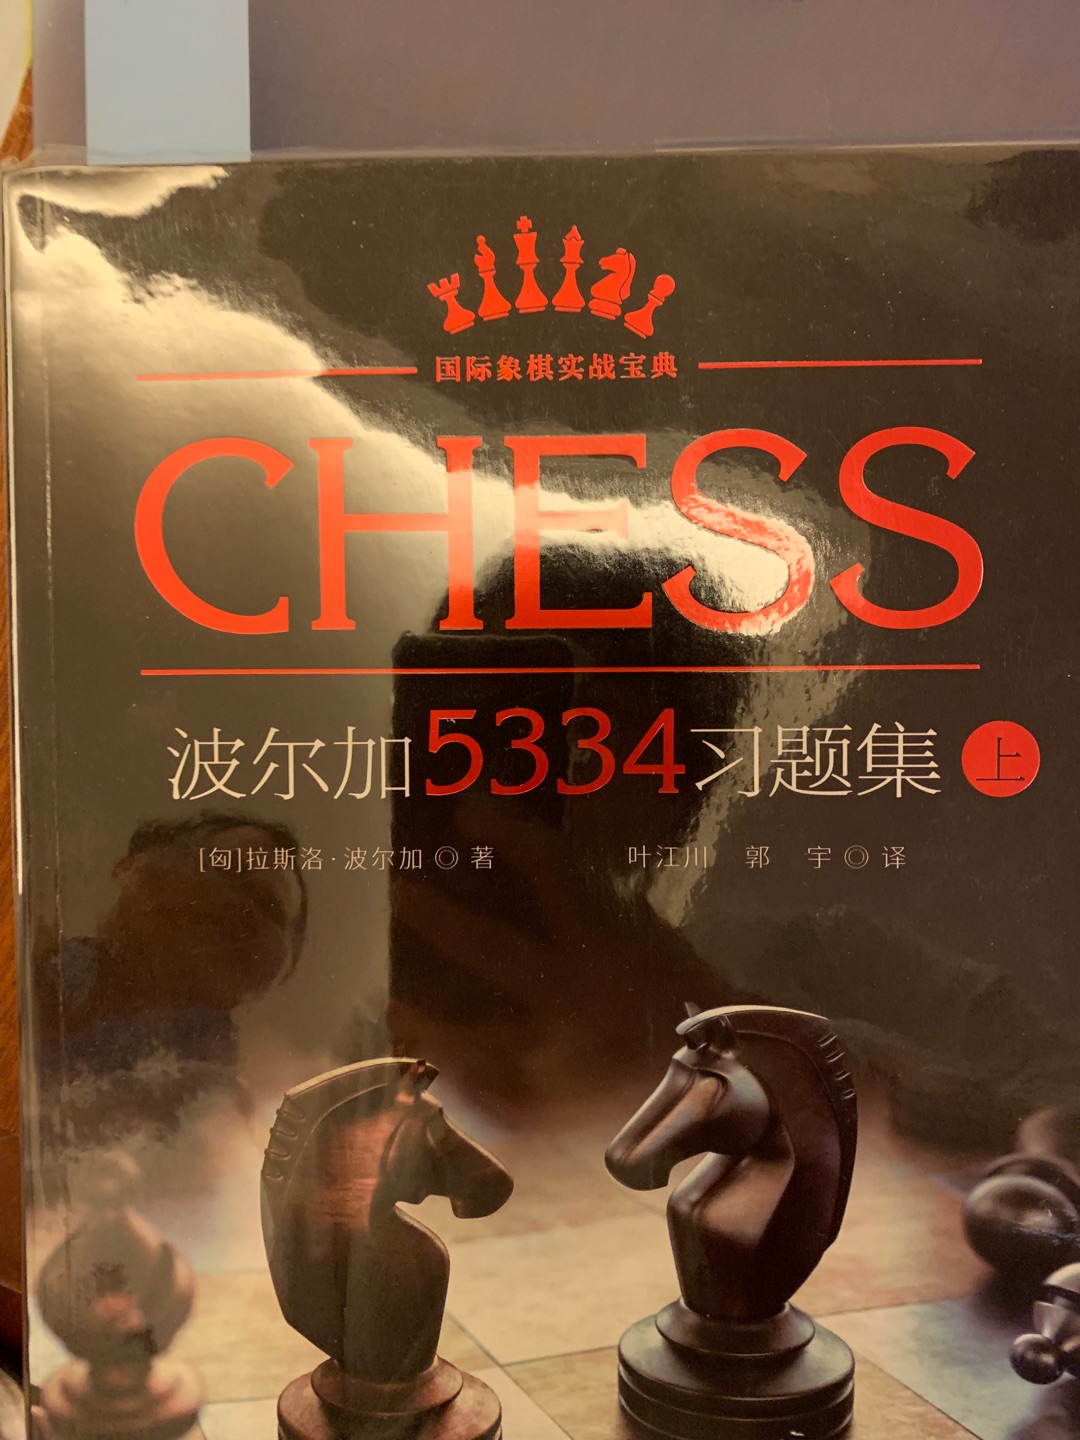 三本波尔加习题集，刷题用的，都说国际象棋就是要刷题。